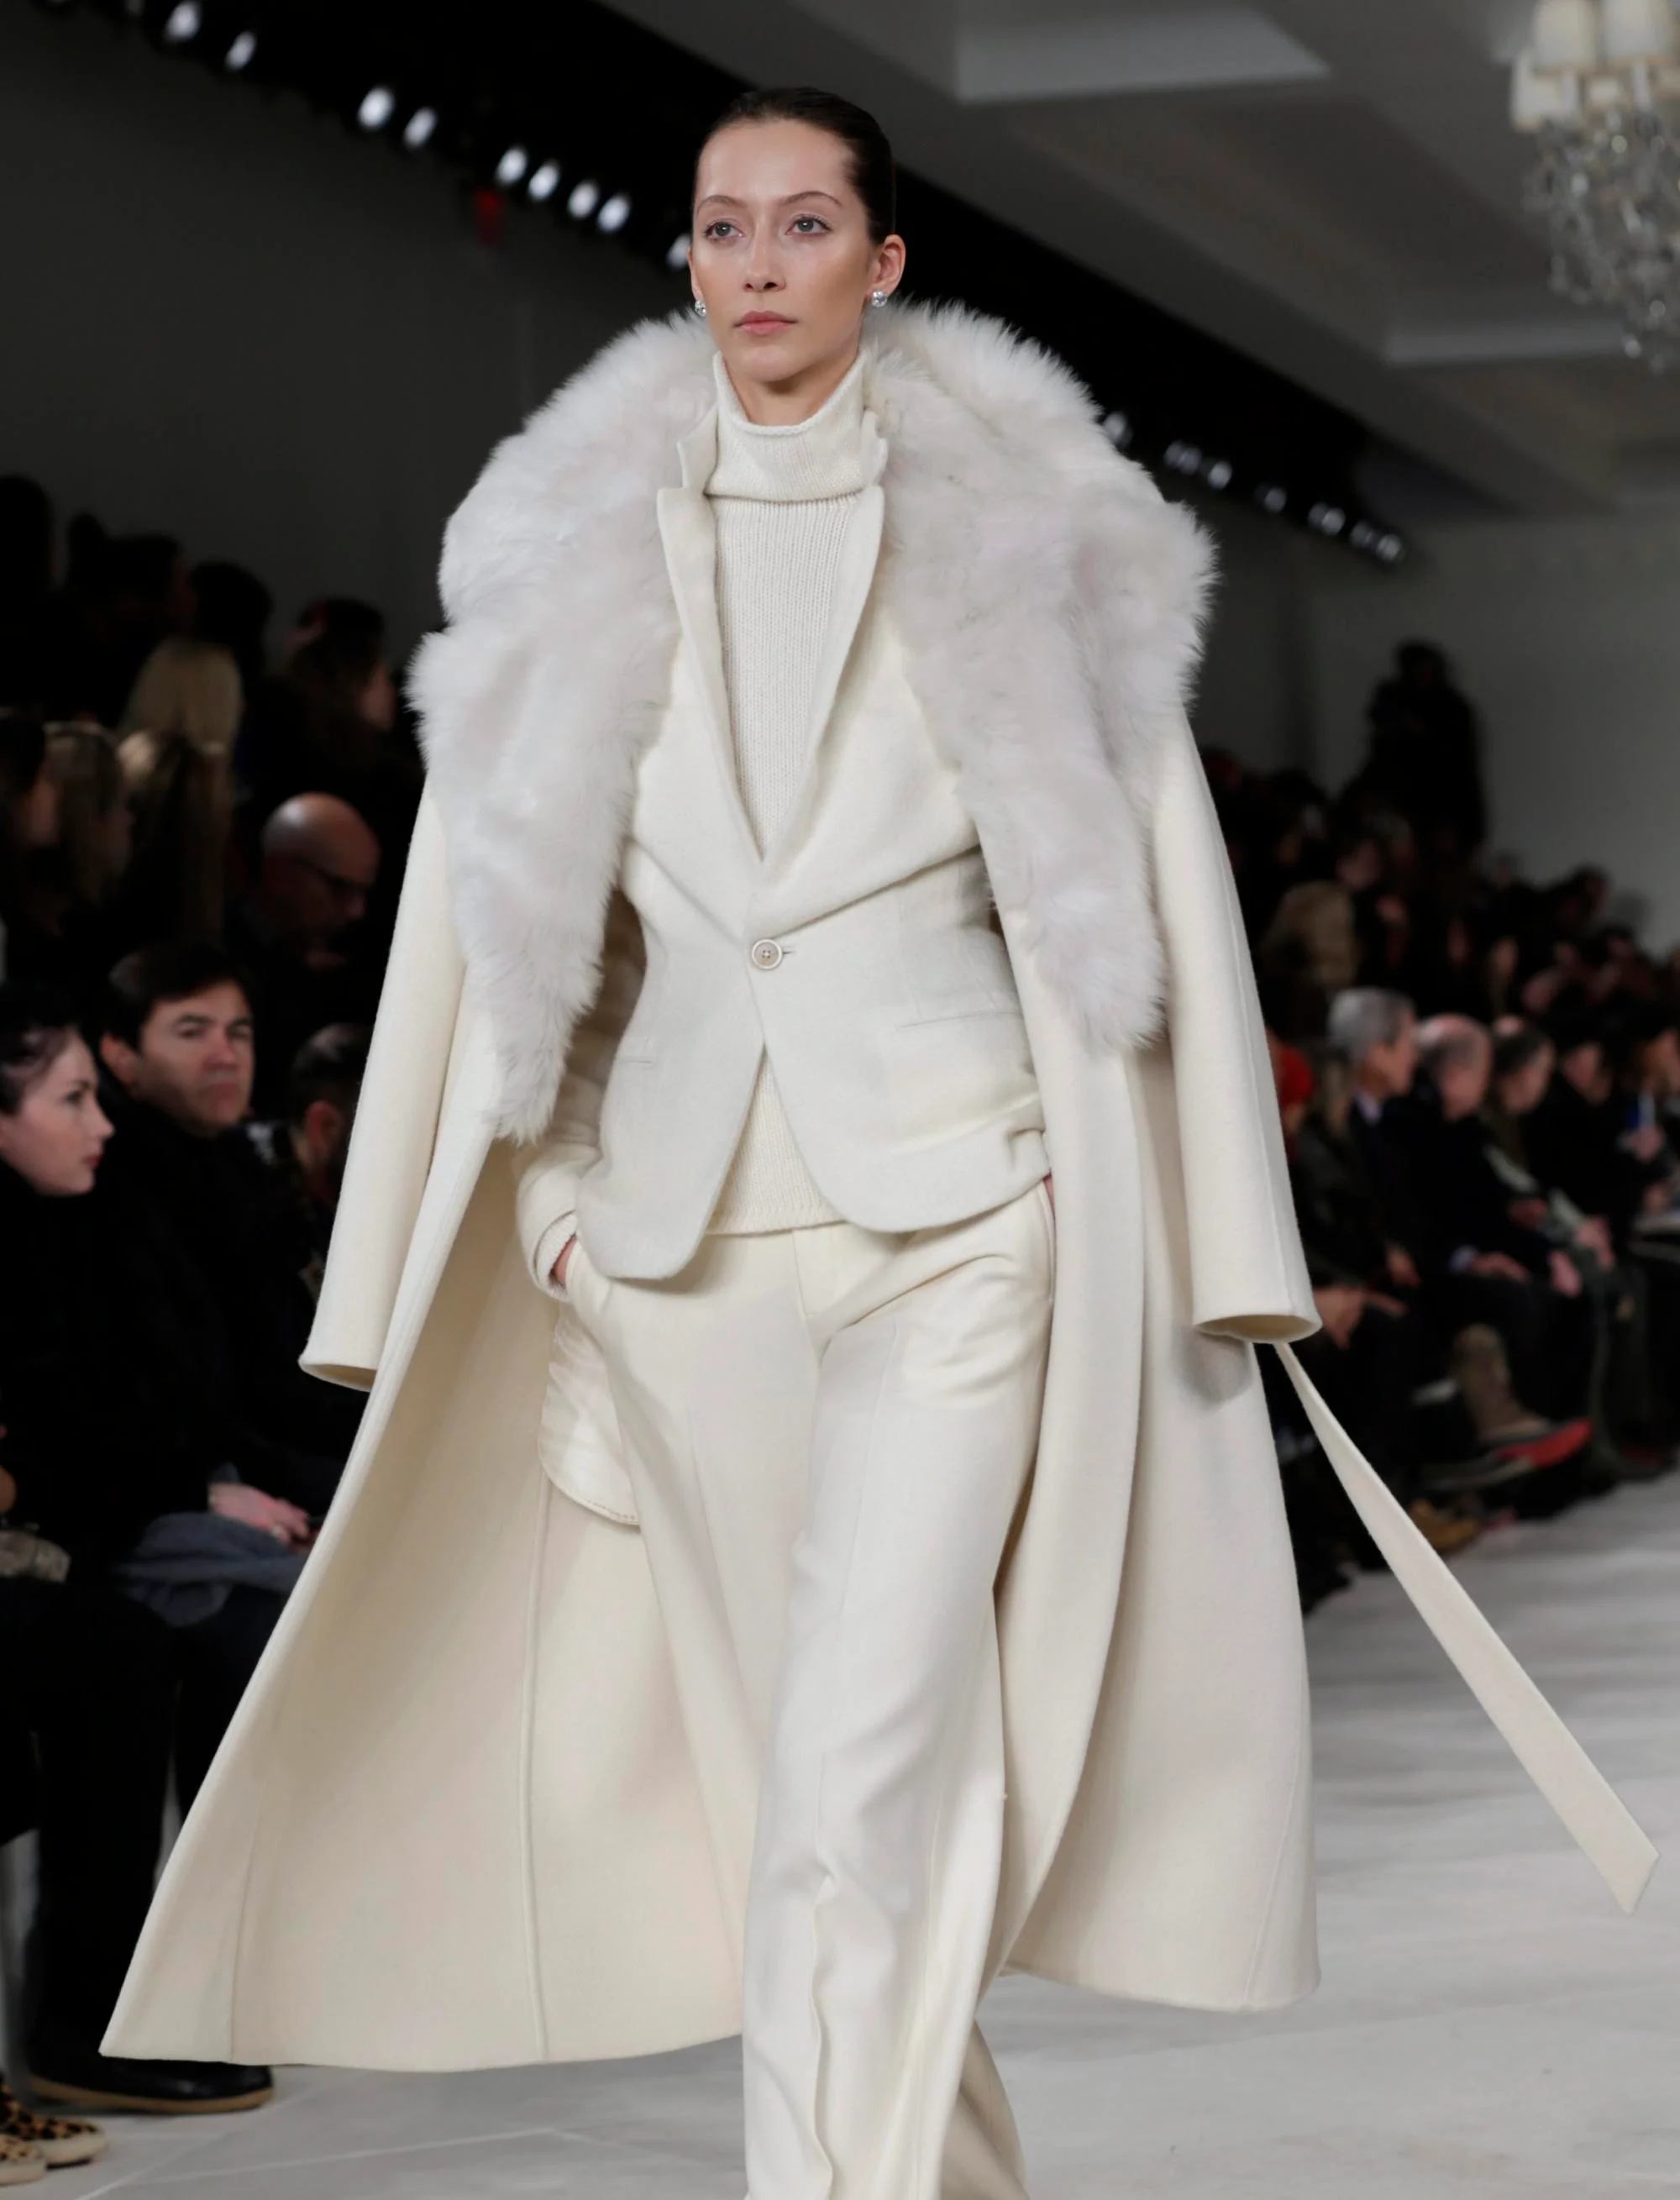 Модель представляет творение из коллекции осень-зима 2014 от Ральфа Лорена во время Недели моды Mercedes-Benz в Нью-Йорке, США, февраль 2014 года. Фото: EPA-EFE